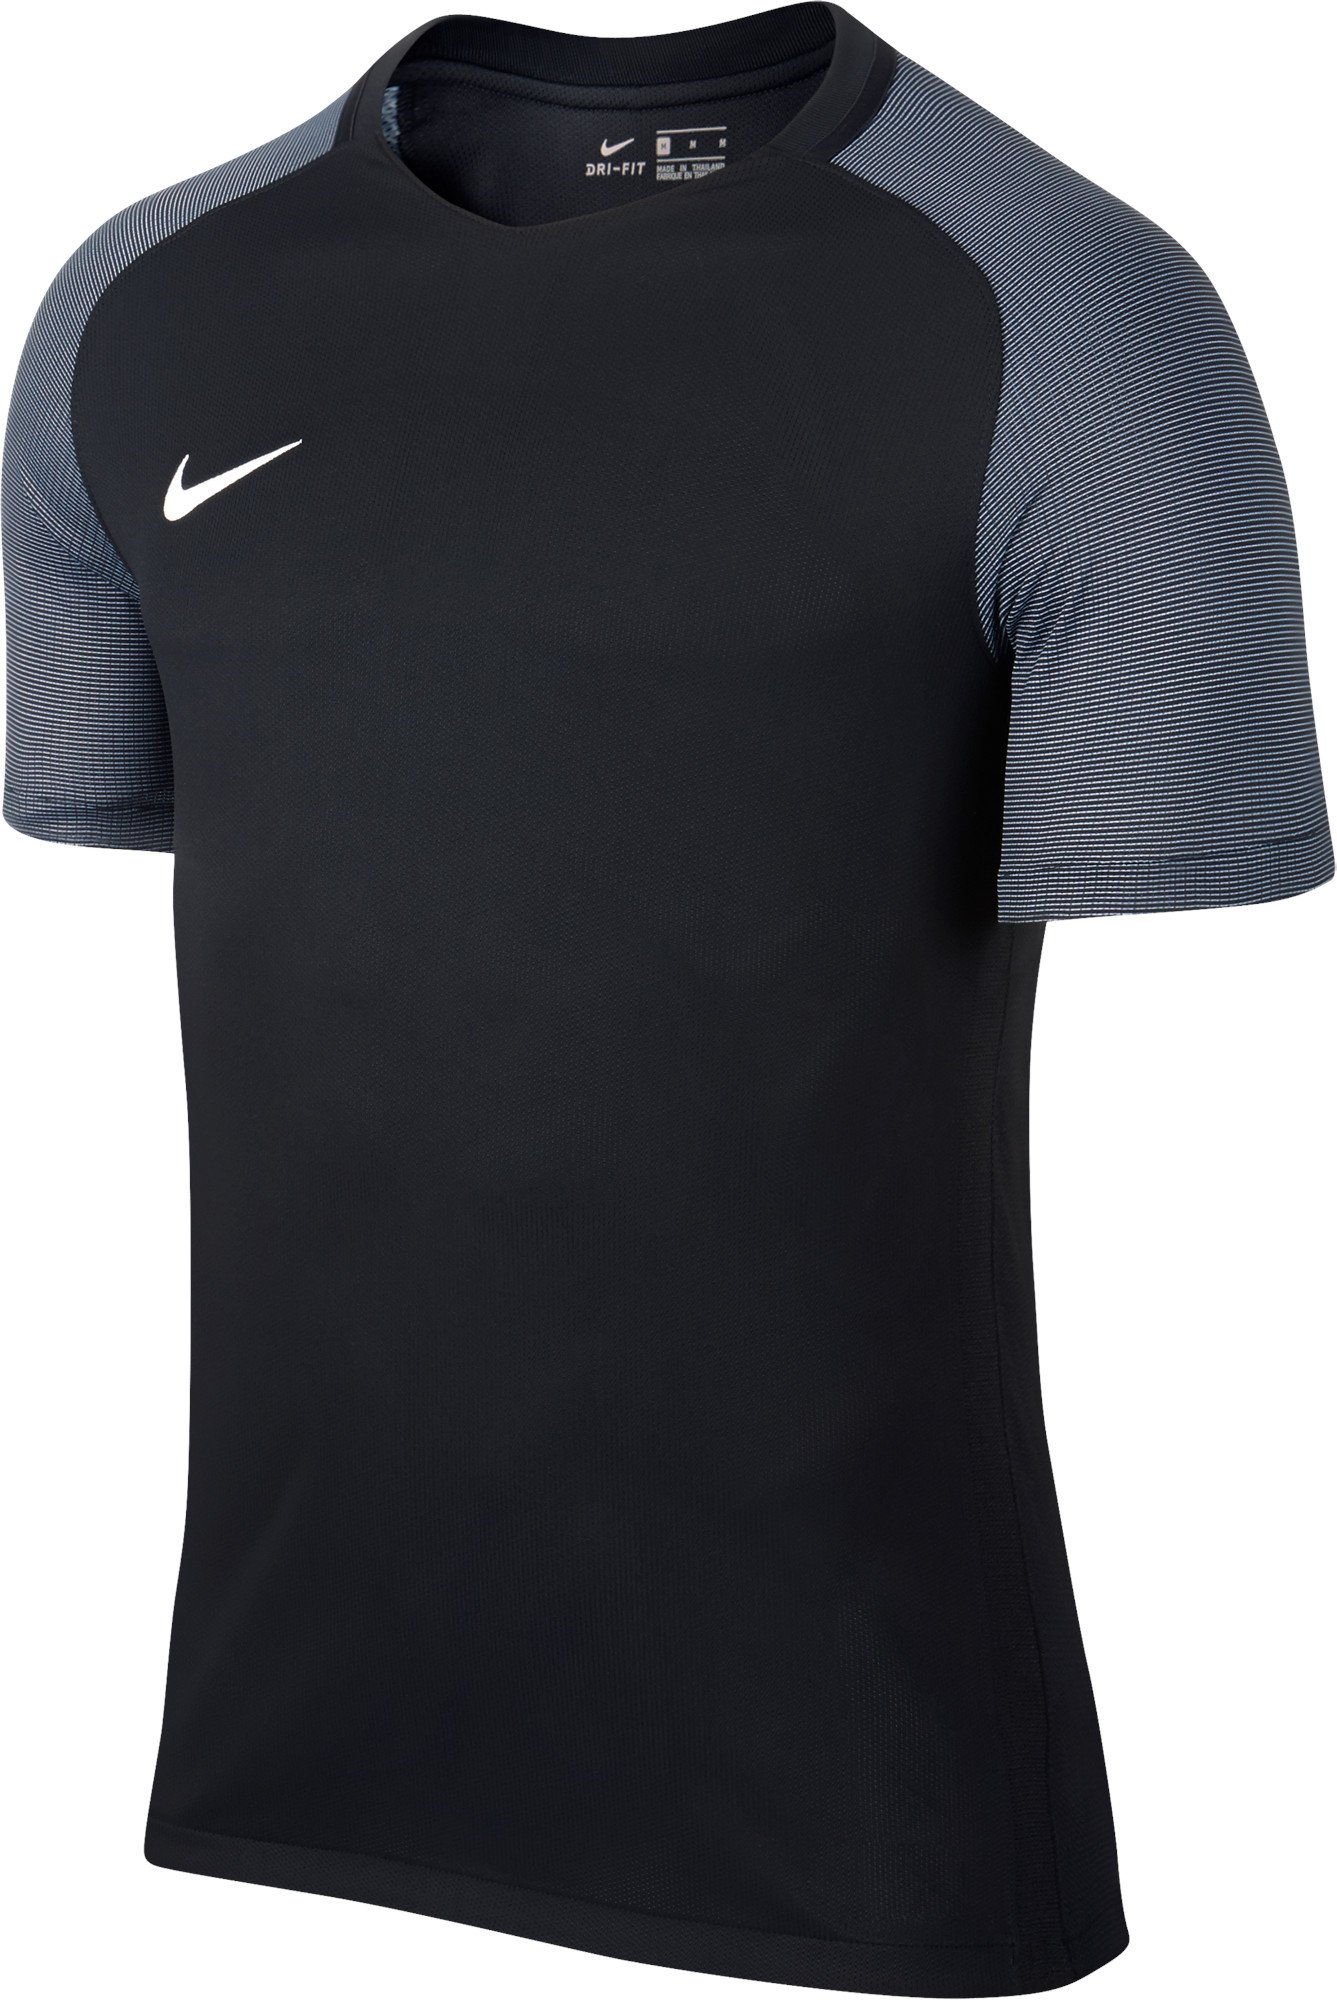 Camiseta Nike M NK DRY REVOLUTION IV JSY SS